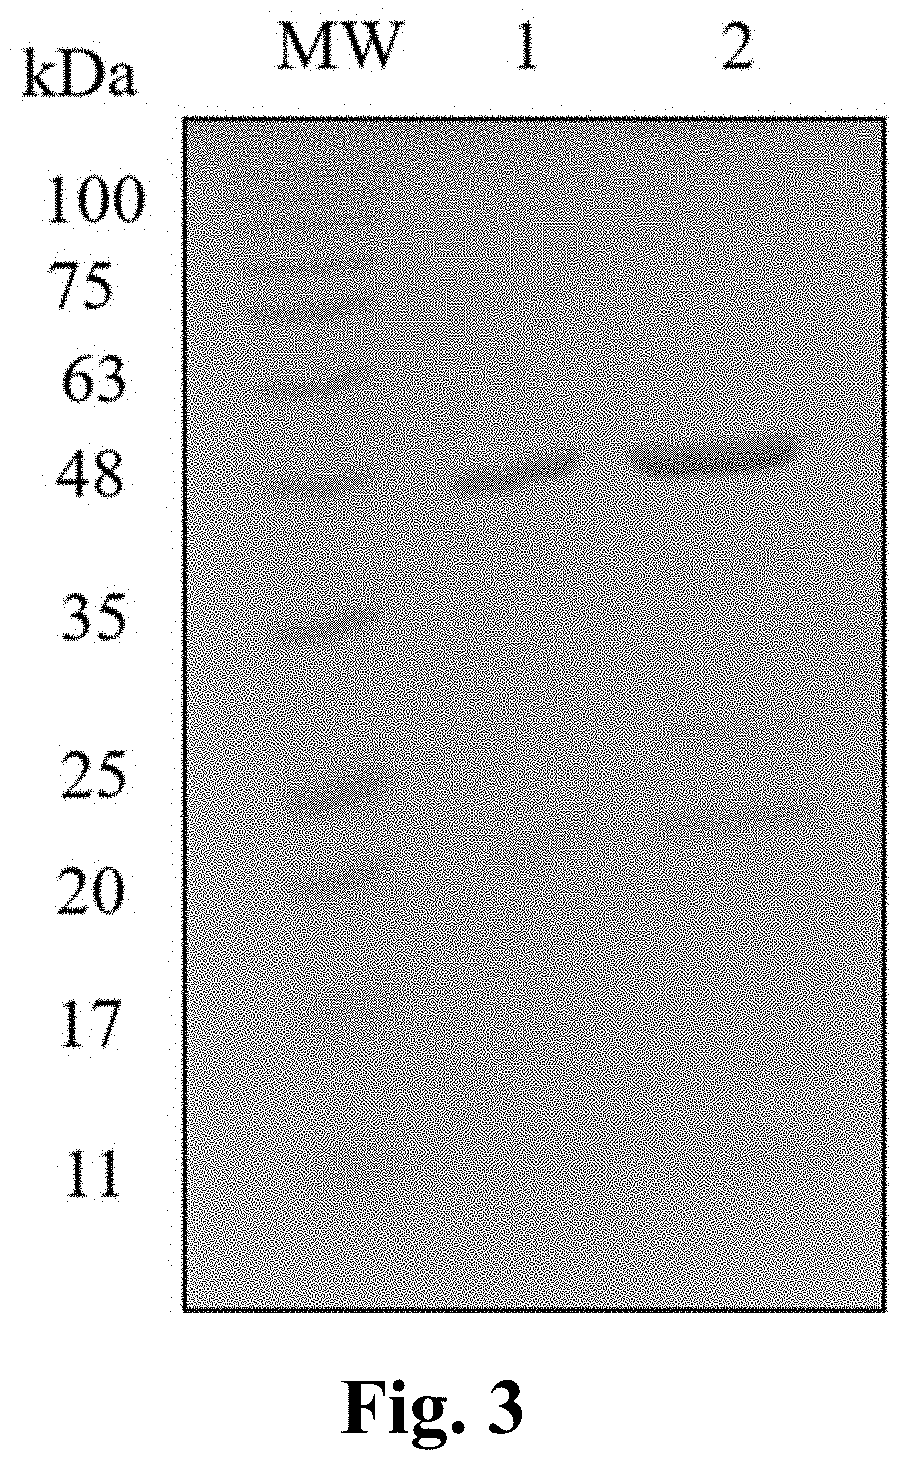 Iptg-free induction process for expression of biosimilar rhu ranibizumab antibody fragment using e. coli